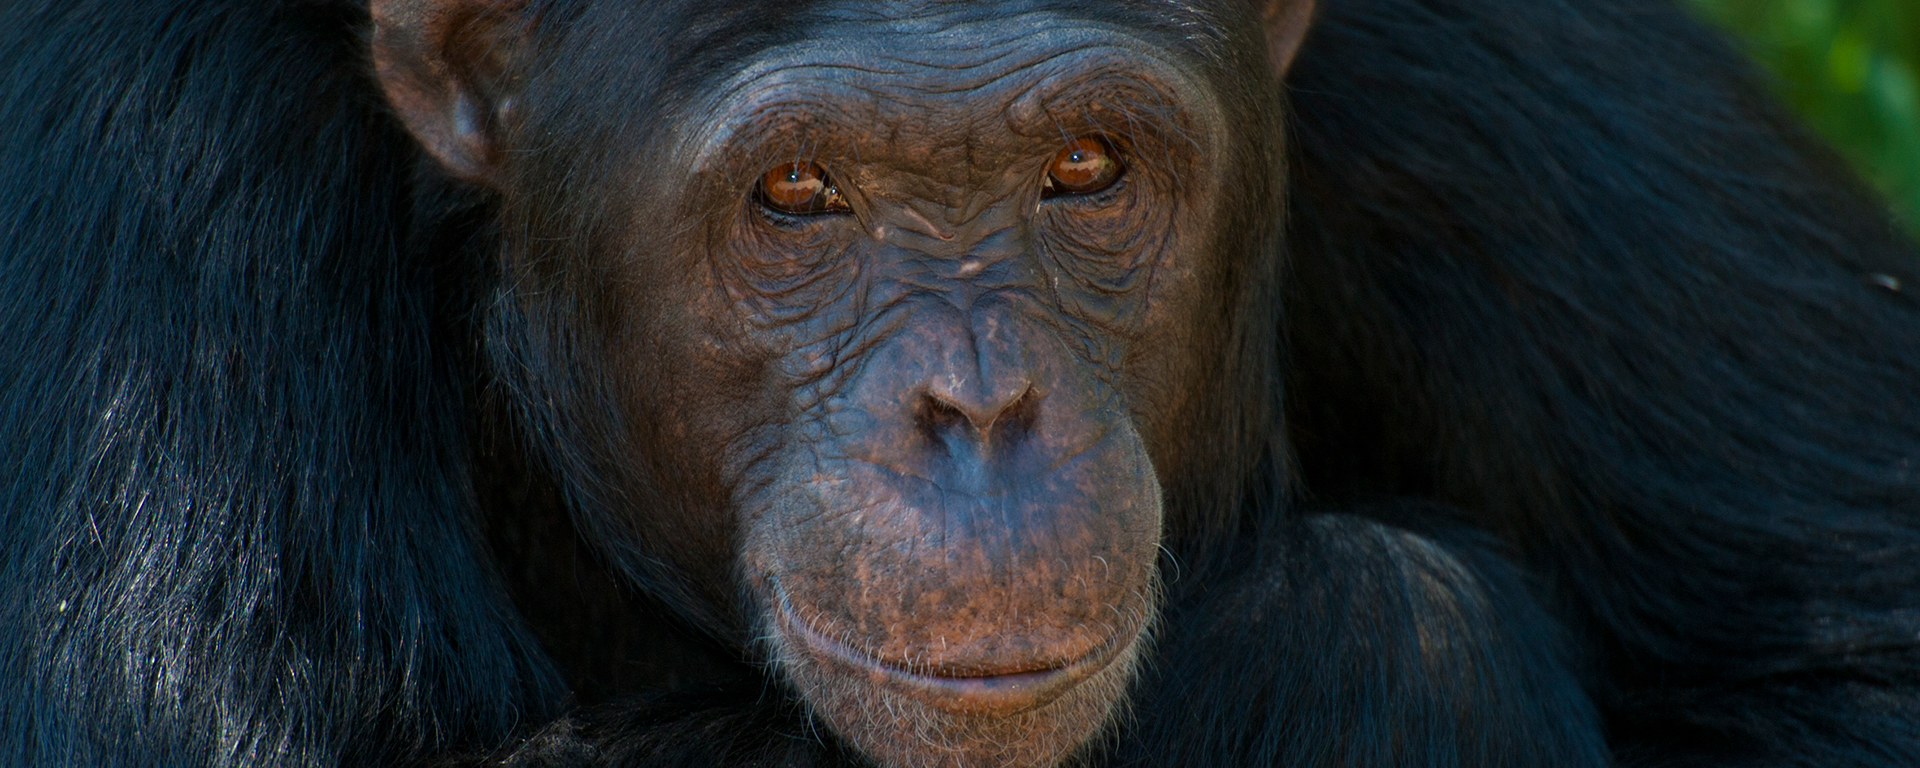 olpejeta-chimp-project-kenya-safari-2